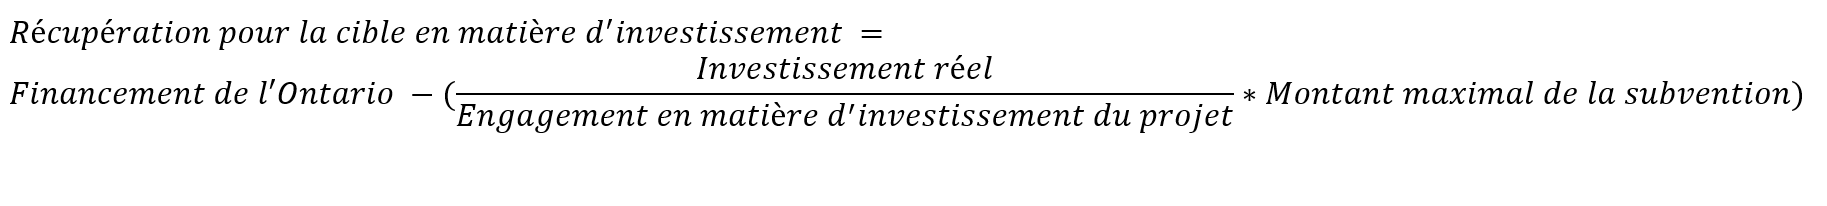 Le calcul de la récupération pour la cible en matière d’investissement s’effectue selon la formule suivante. Le « financement de l’Ontario » moins (ouverture de la parenthèse) l’« investissement réel », divisé par l’« engagement en matière d’investissement du projet », multiplié par le « montant maximal de la subvention » (fermeture de la parenthèse).